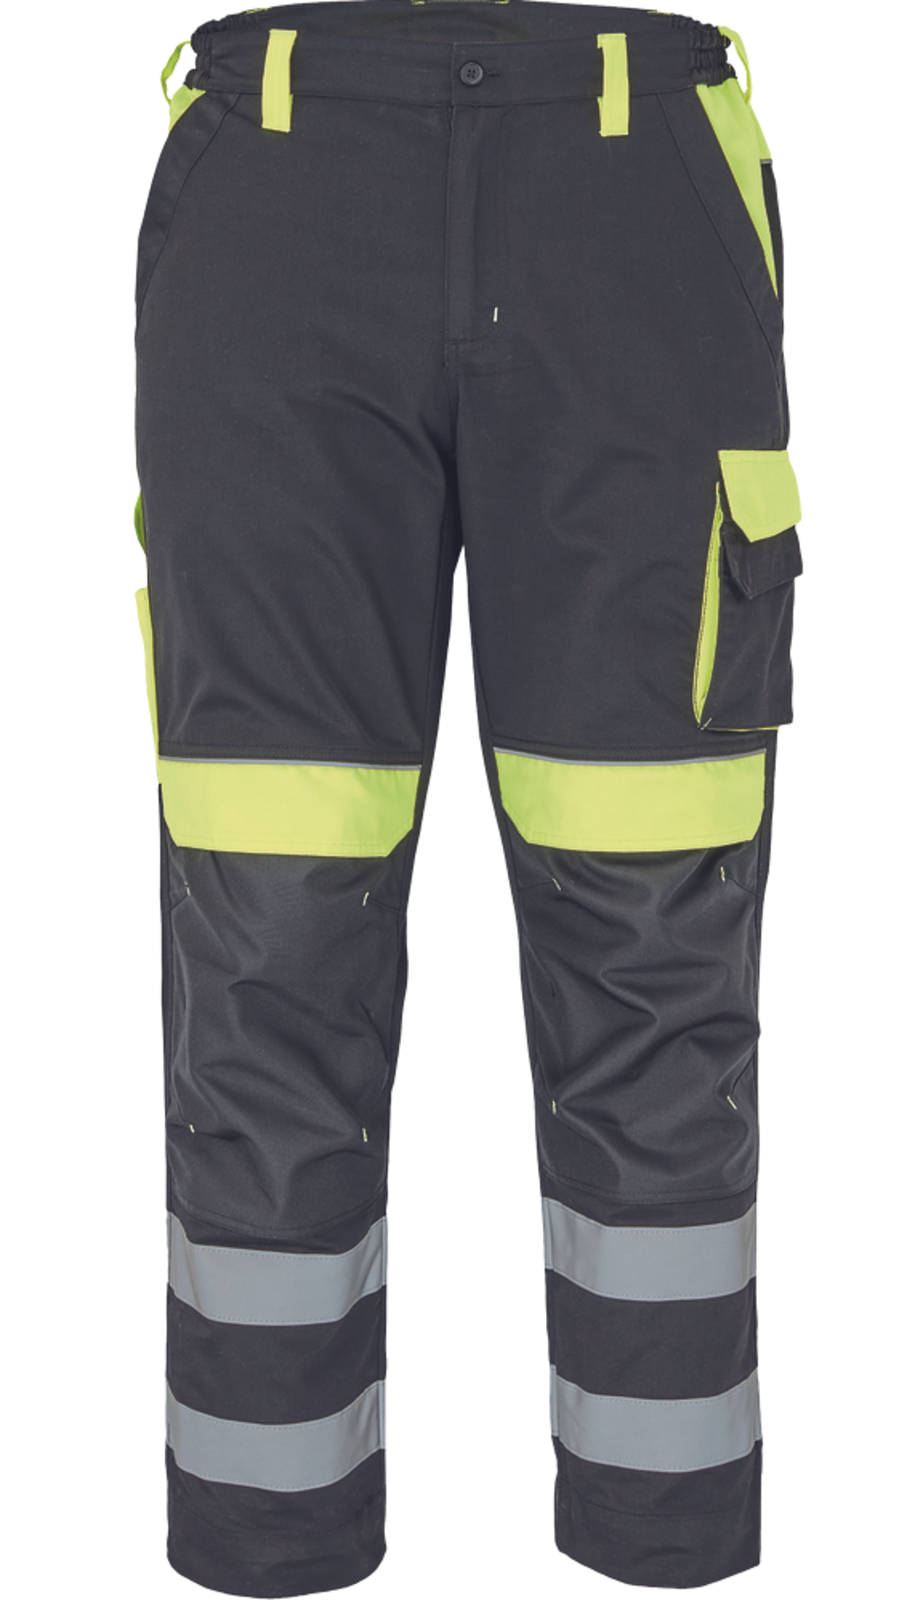 Pracovné nohavice s reflexnými pruhmi Cerva Max Vivo Reflex  - veľkosť: 56, farba: čierna/žltá